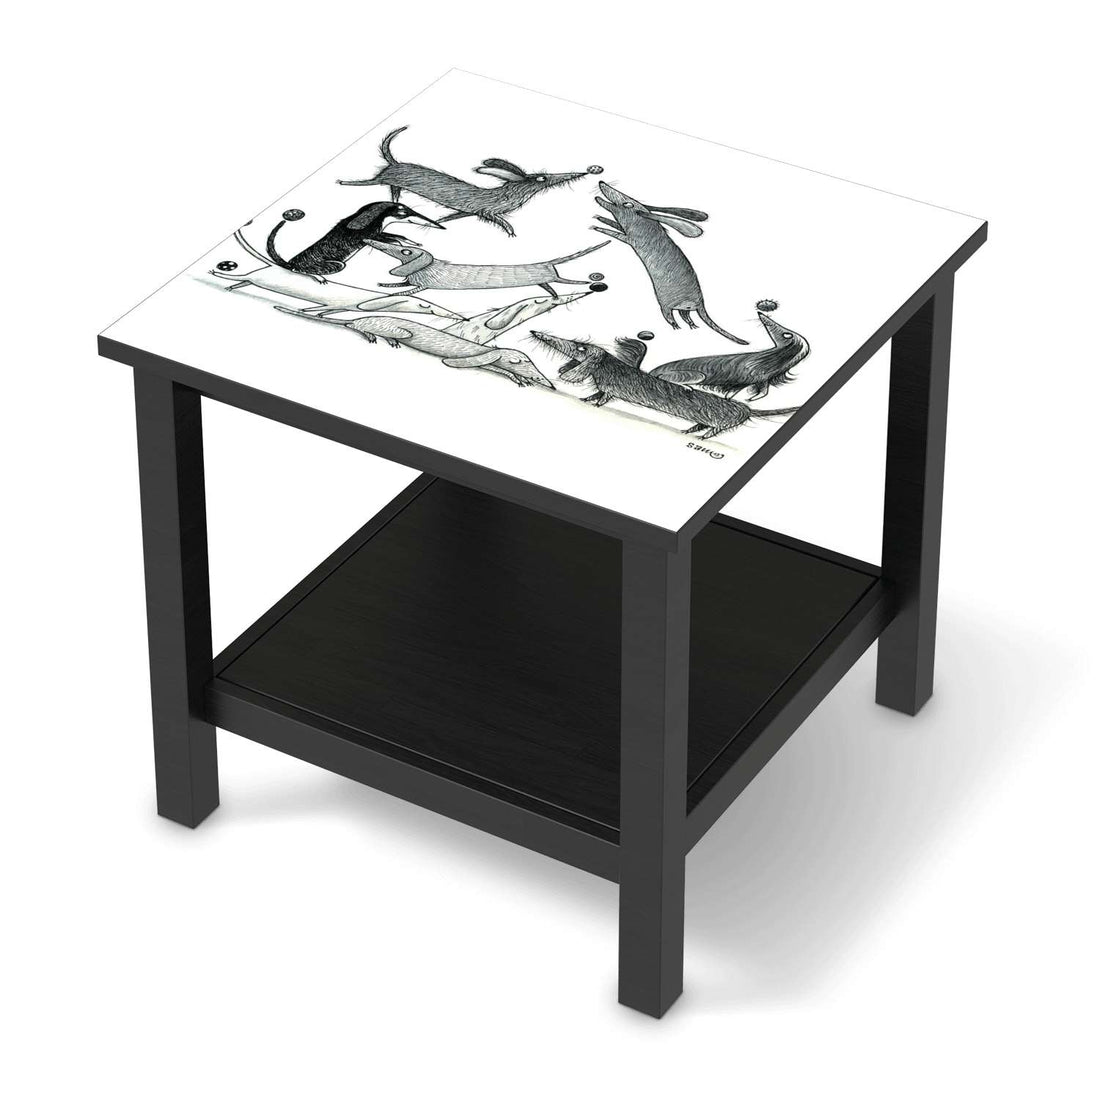 Möbel Klebefolie Akrobaten Dackel - IKEA Hemnes Beistelltisch 55x55 cm - schwarz